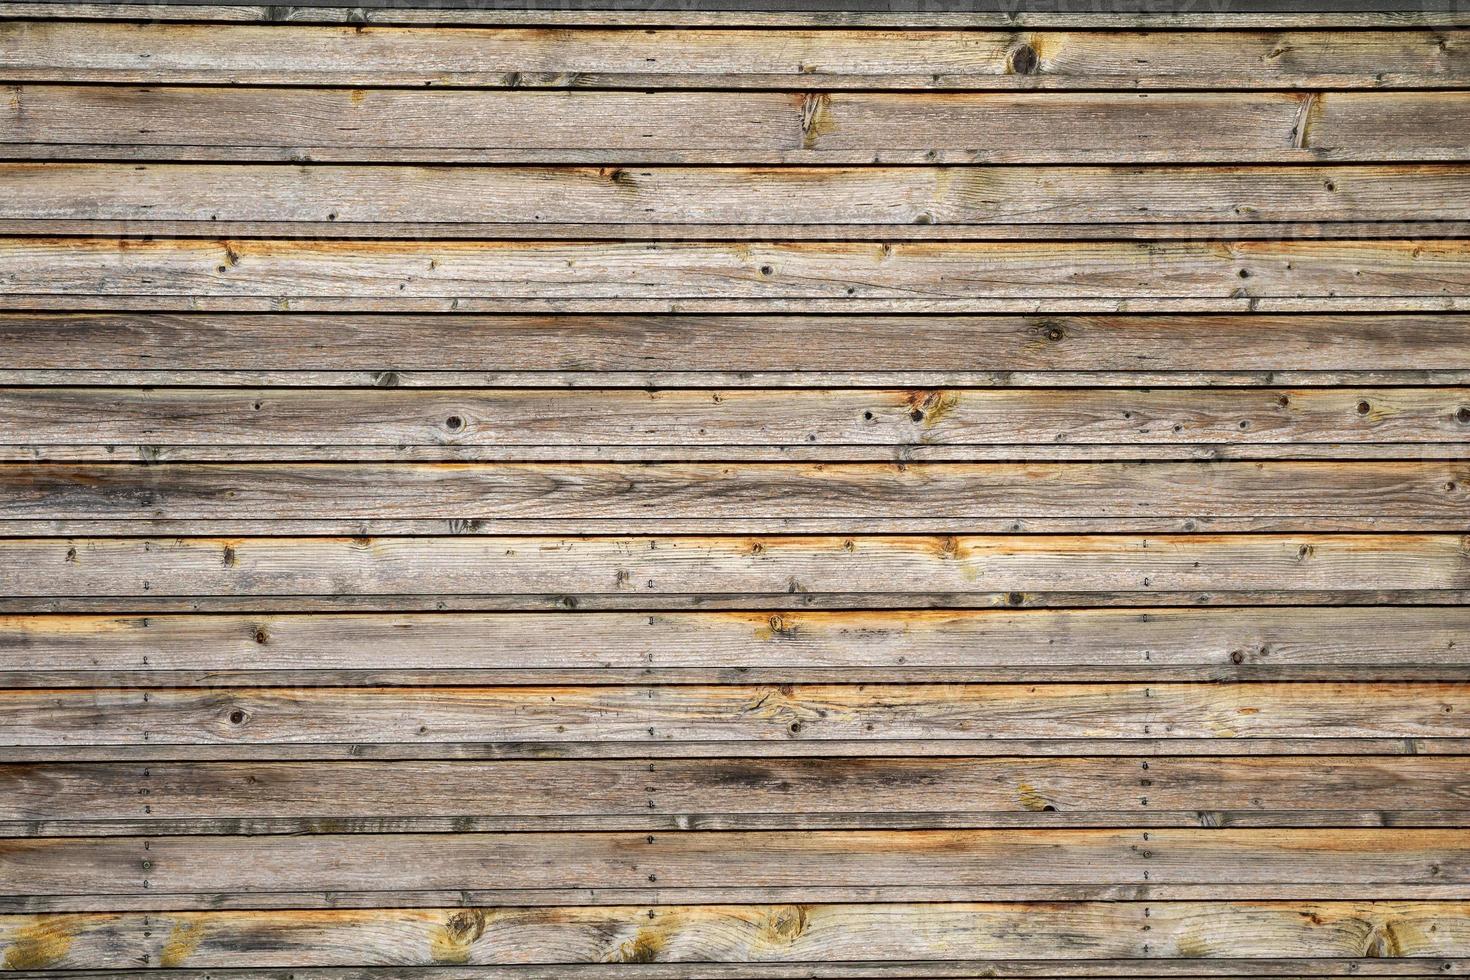 textura abstrata de madeira. pano de fundo de superfície do grunge. padrão de efeito de madeira sujo. fundo material. foto